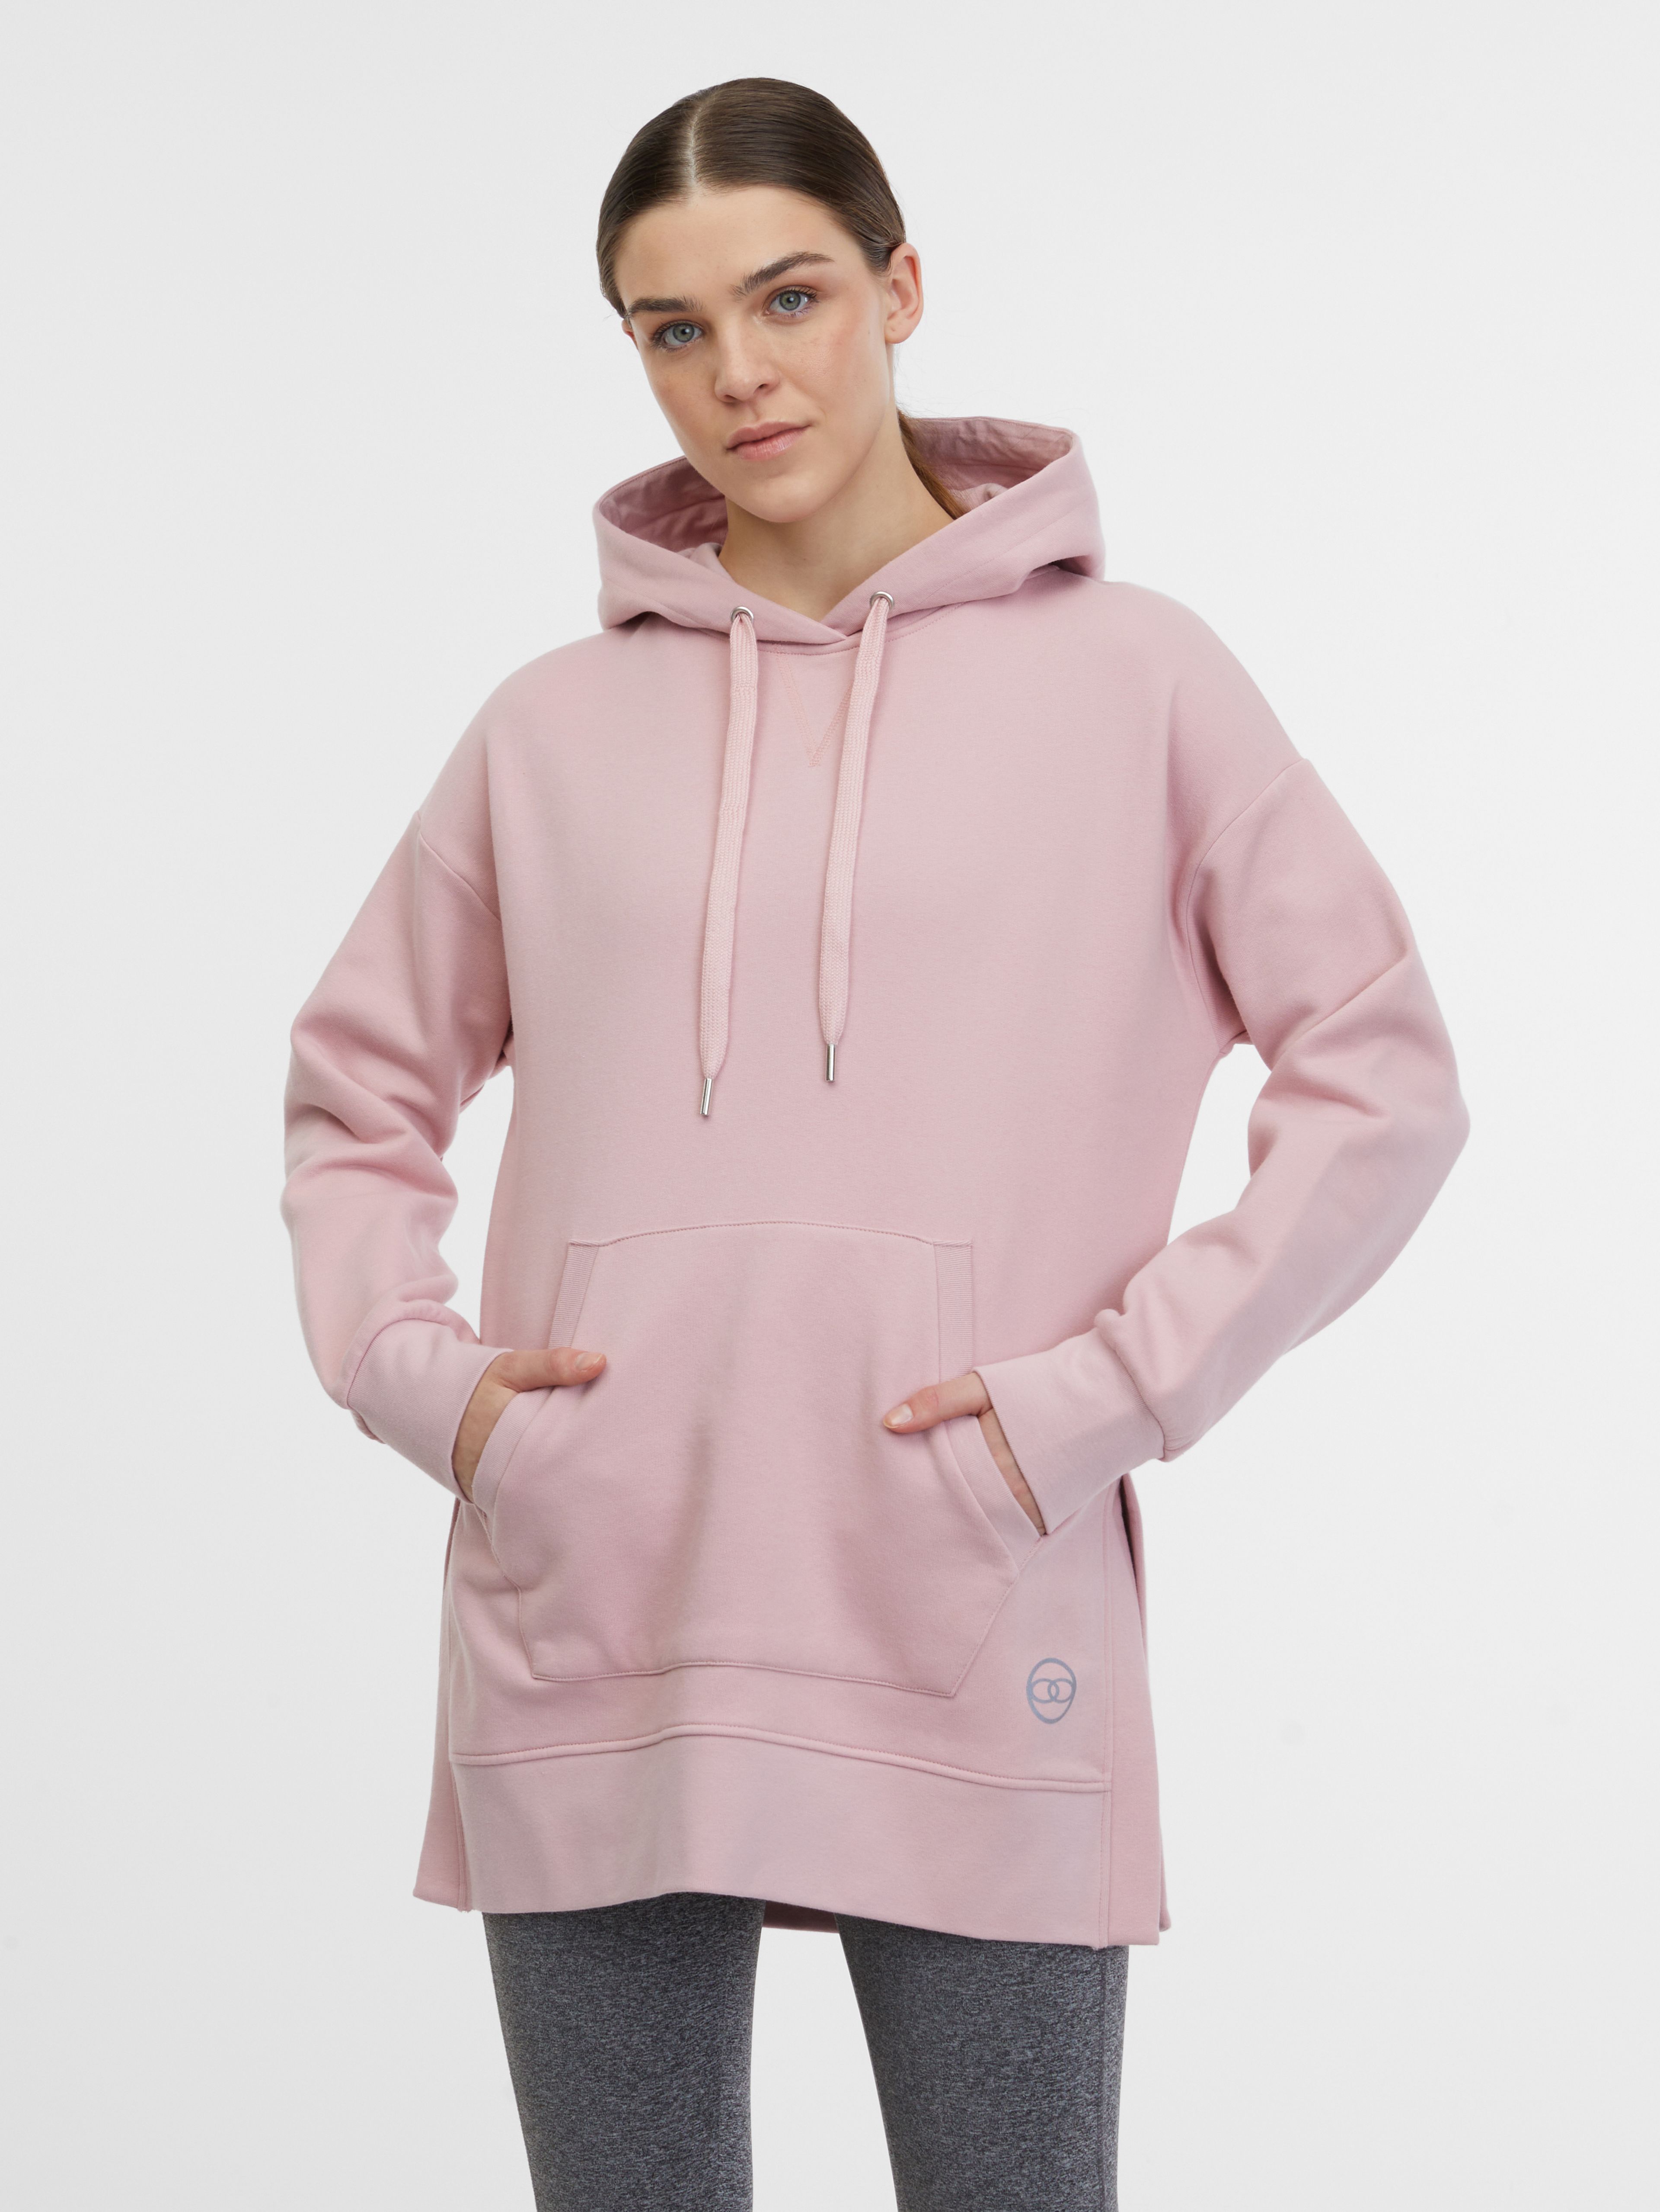 ORSAY világos rózsaszín női kapucnis sportpulóver kapucnival